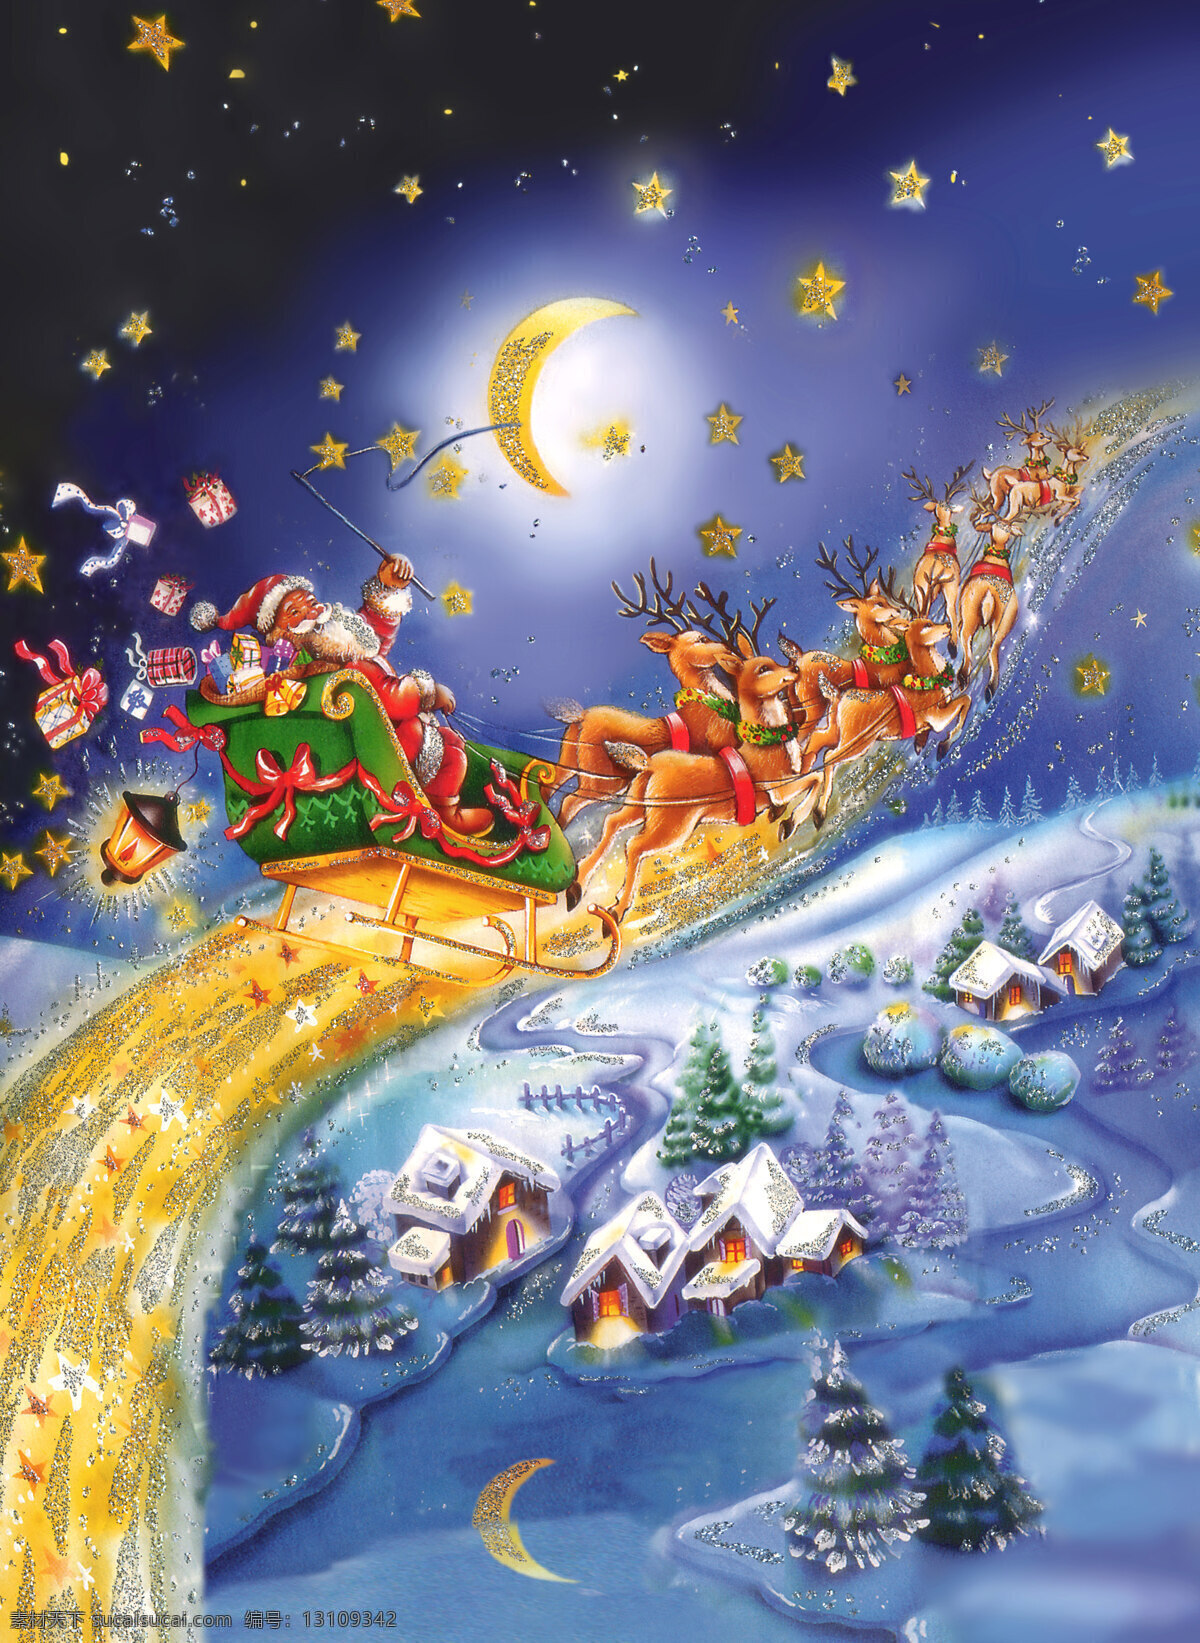 圣诞老人 圣诞 圣诞节 圣诞卡 圣诞屋 雪地 礼品 节日 圣诞夜景 星空 卡通 雪橇 设计图库